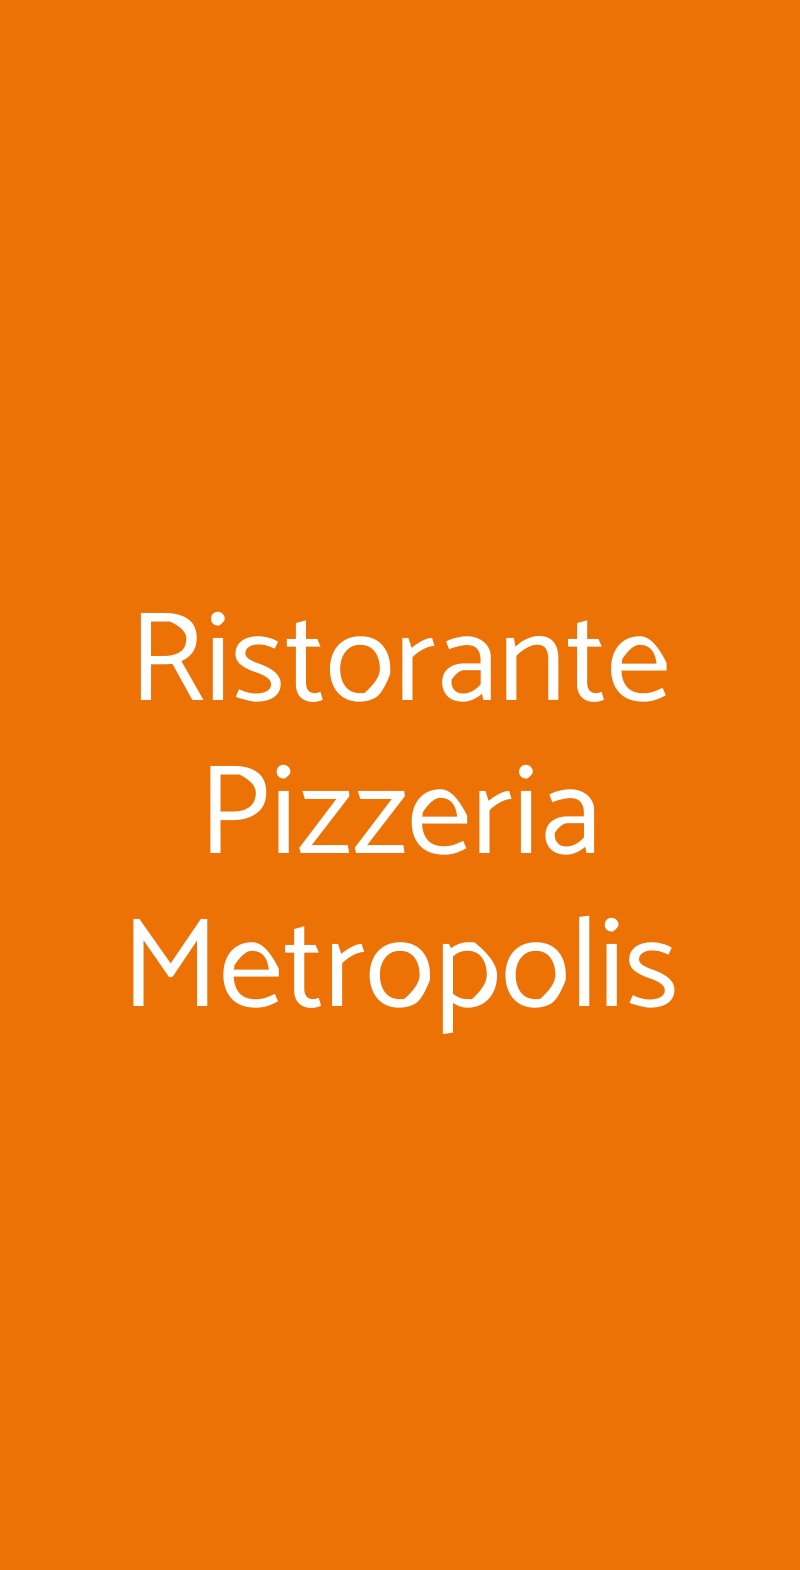 Ristorante Pizzeria Metropolis Conegliano menù 1 pagina